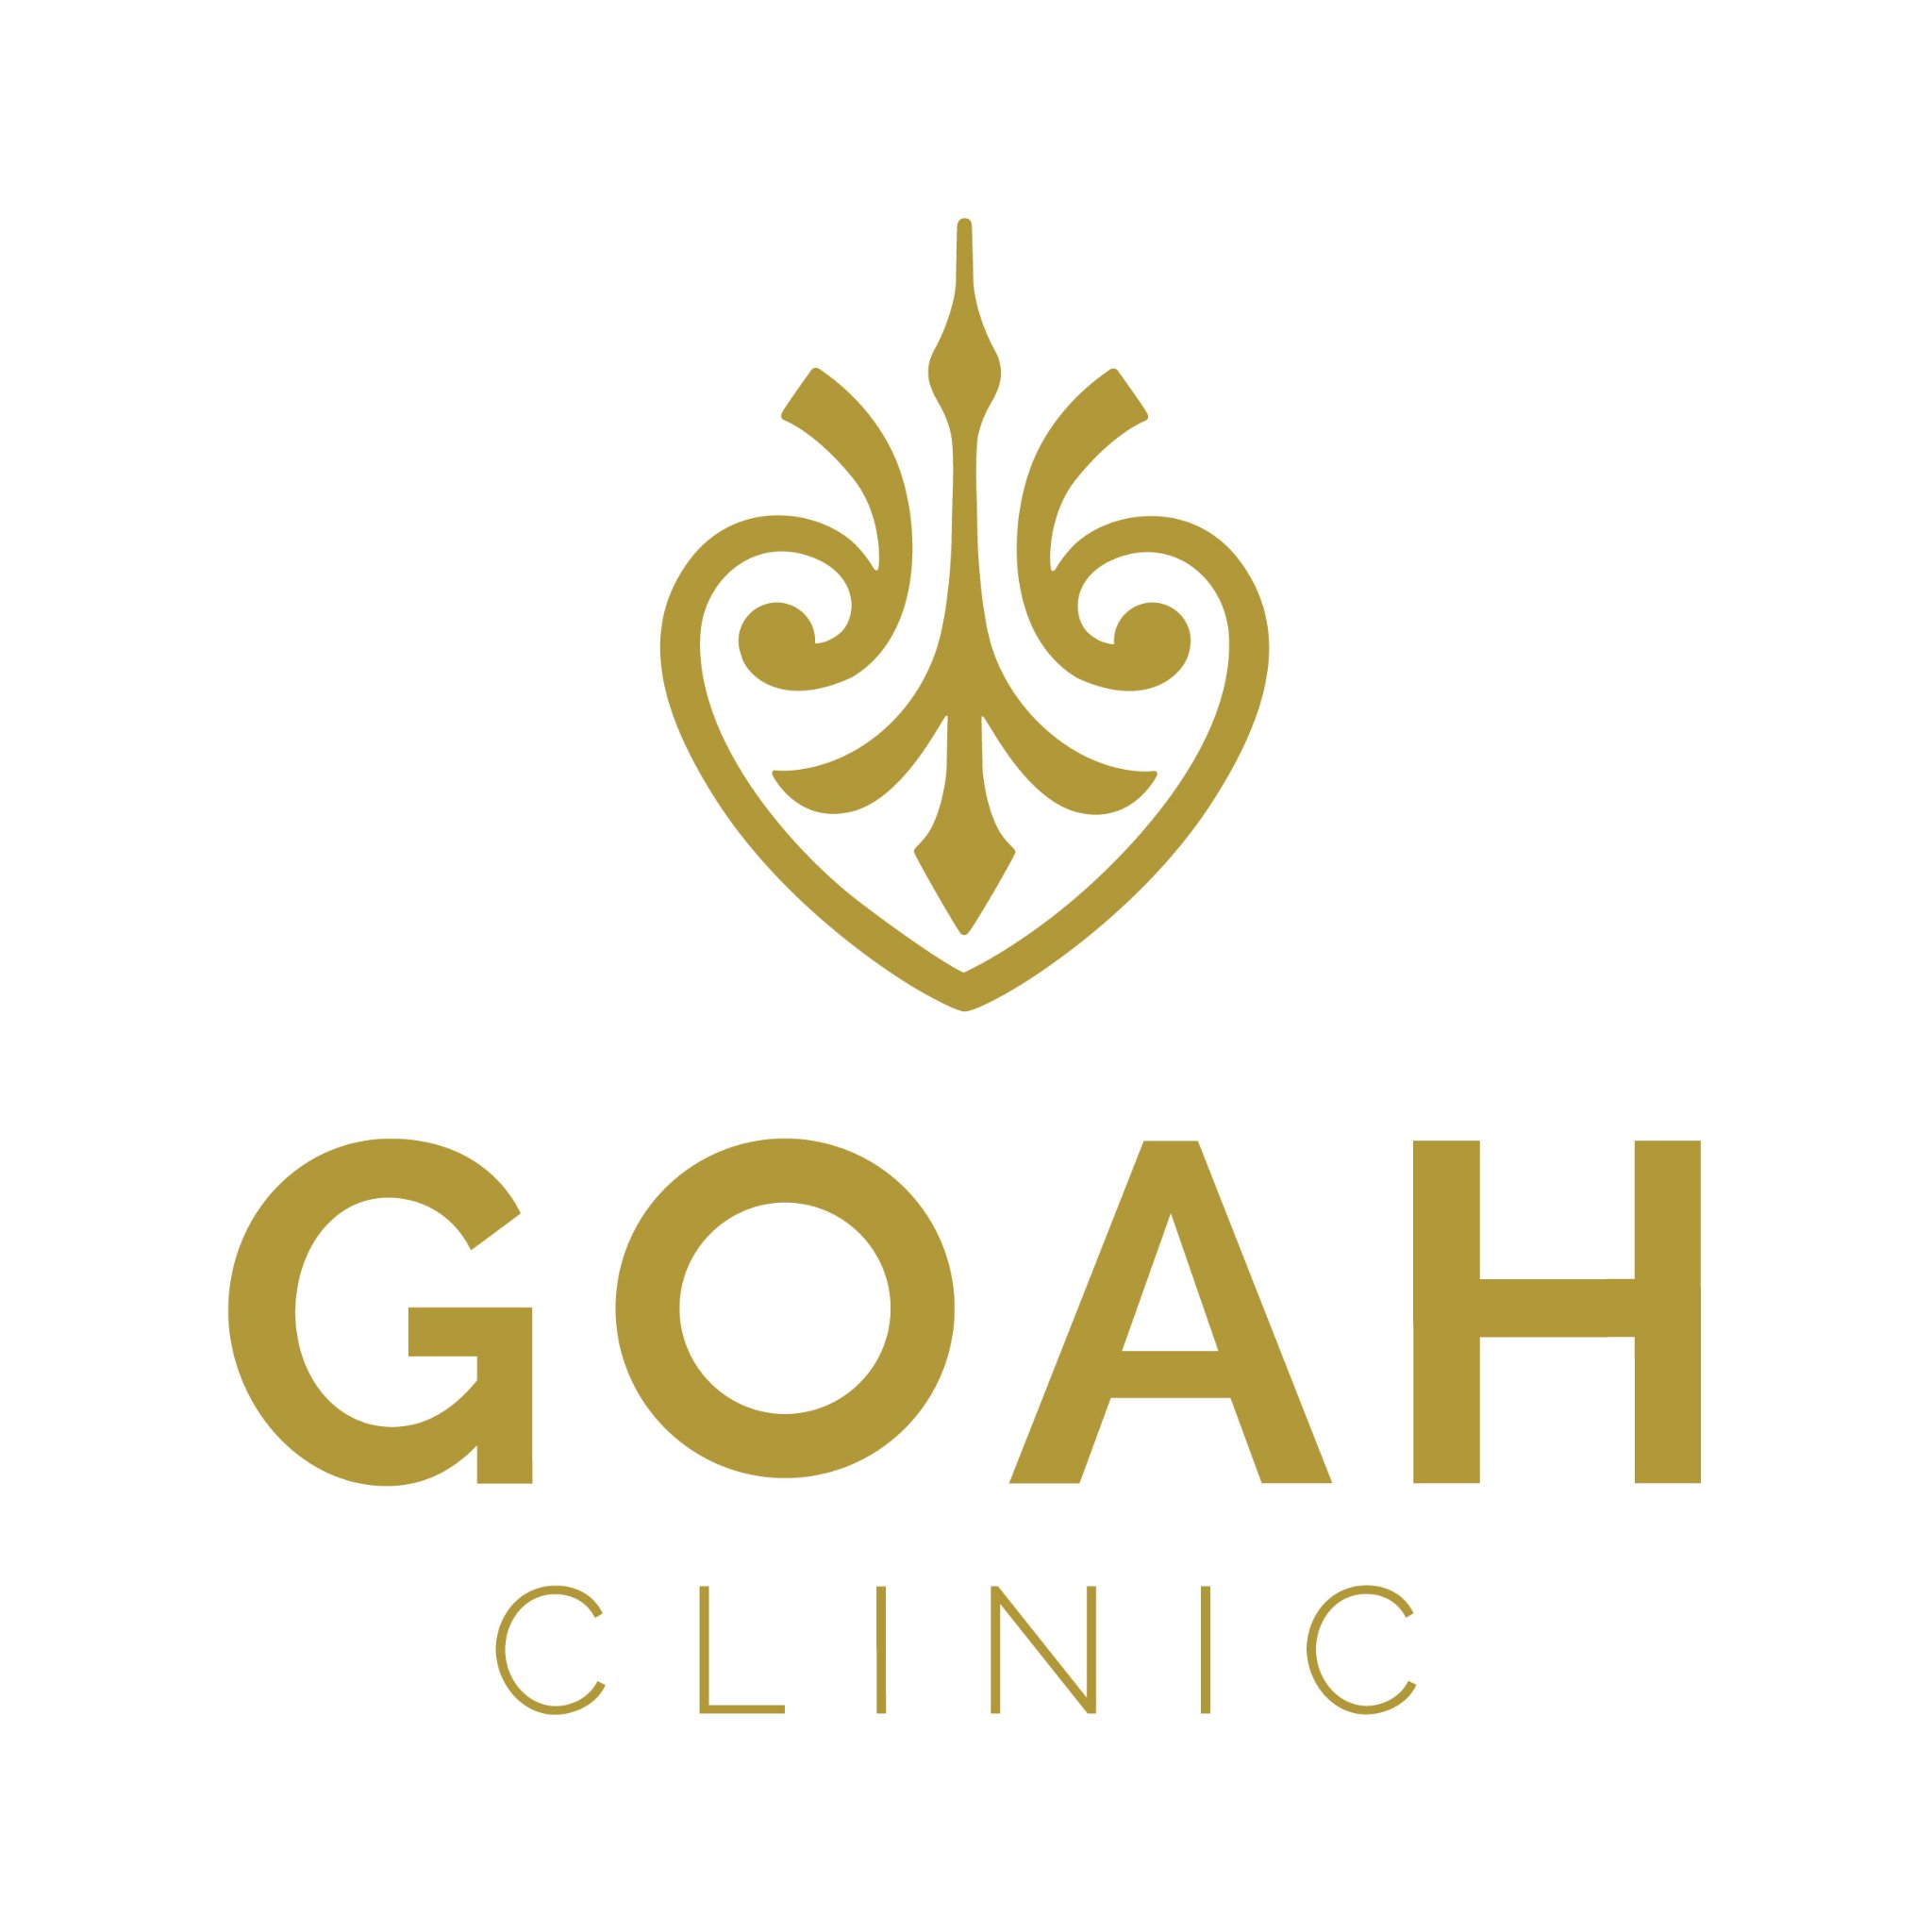 Goah Clinic